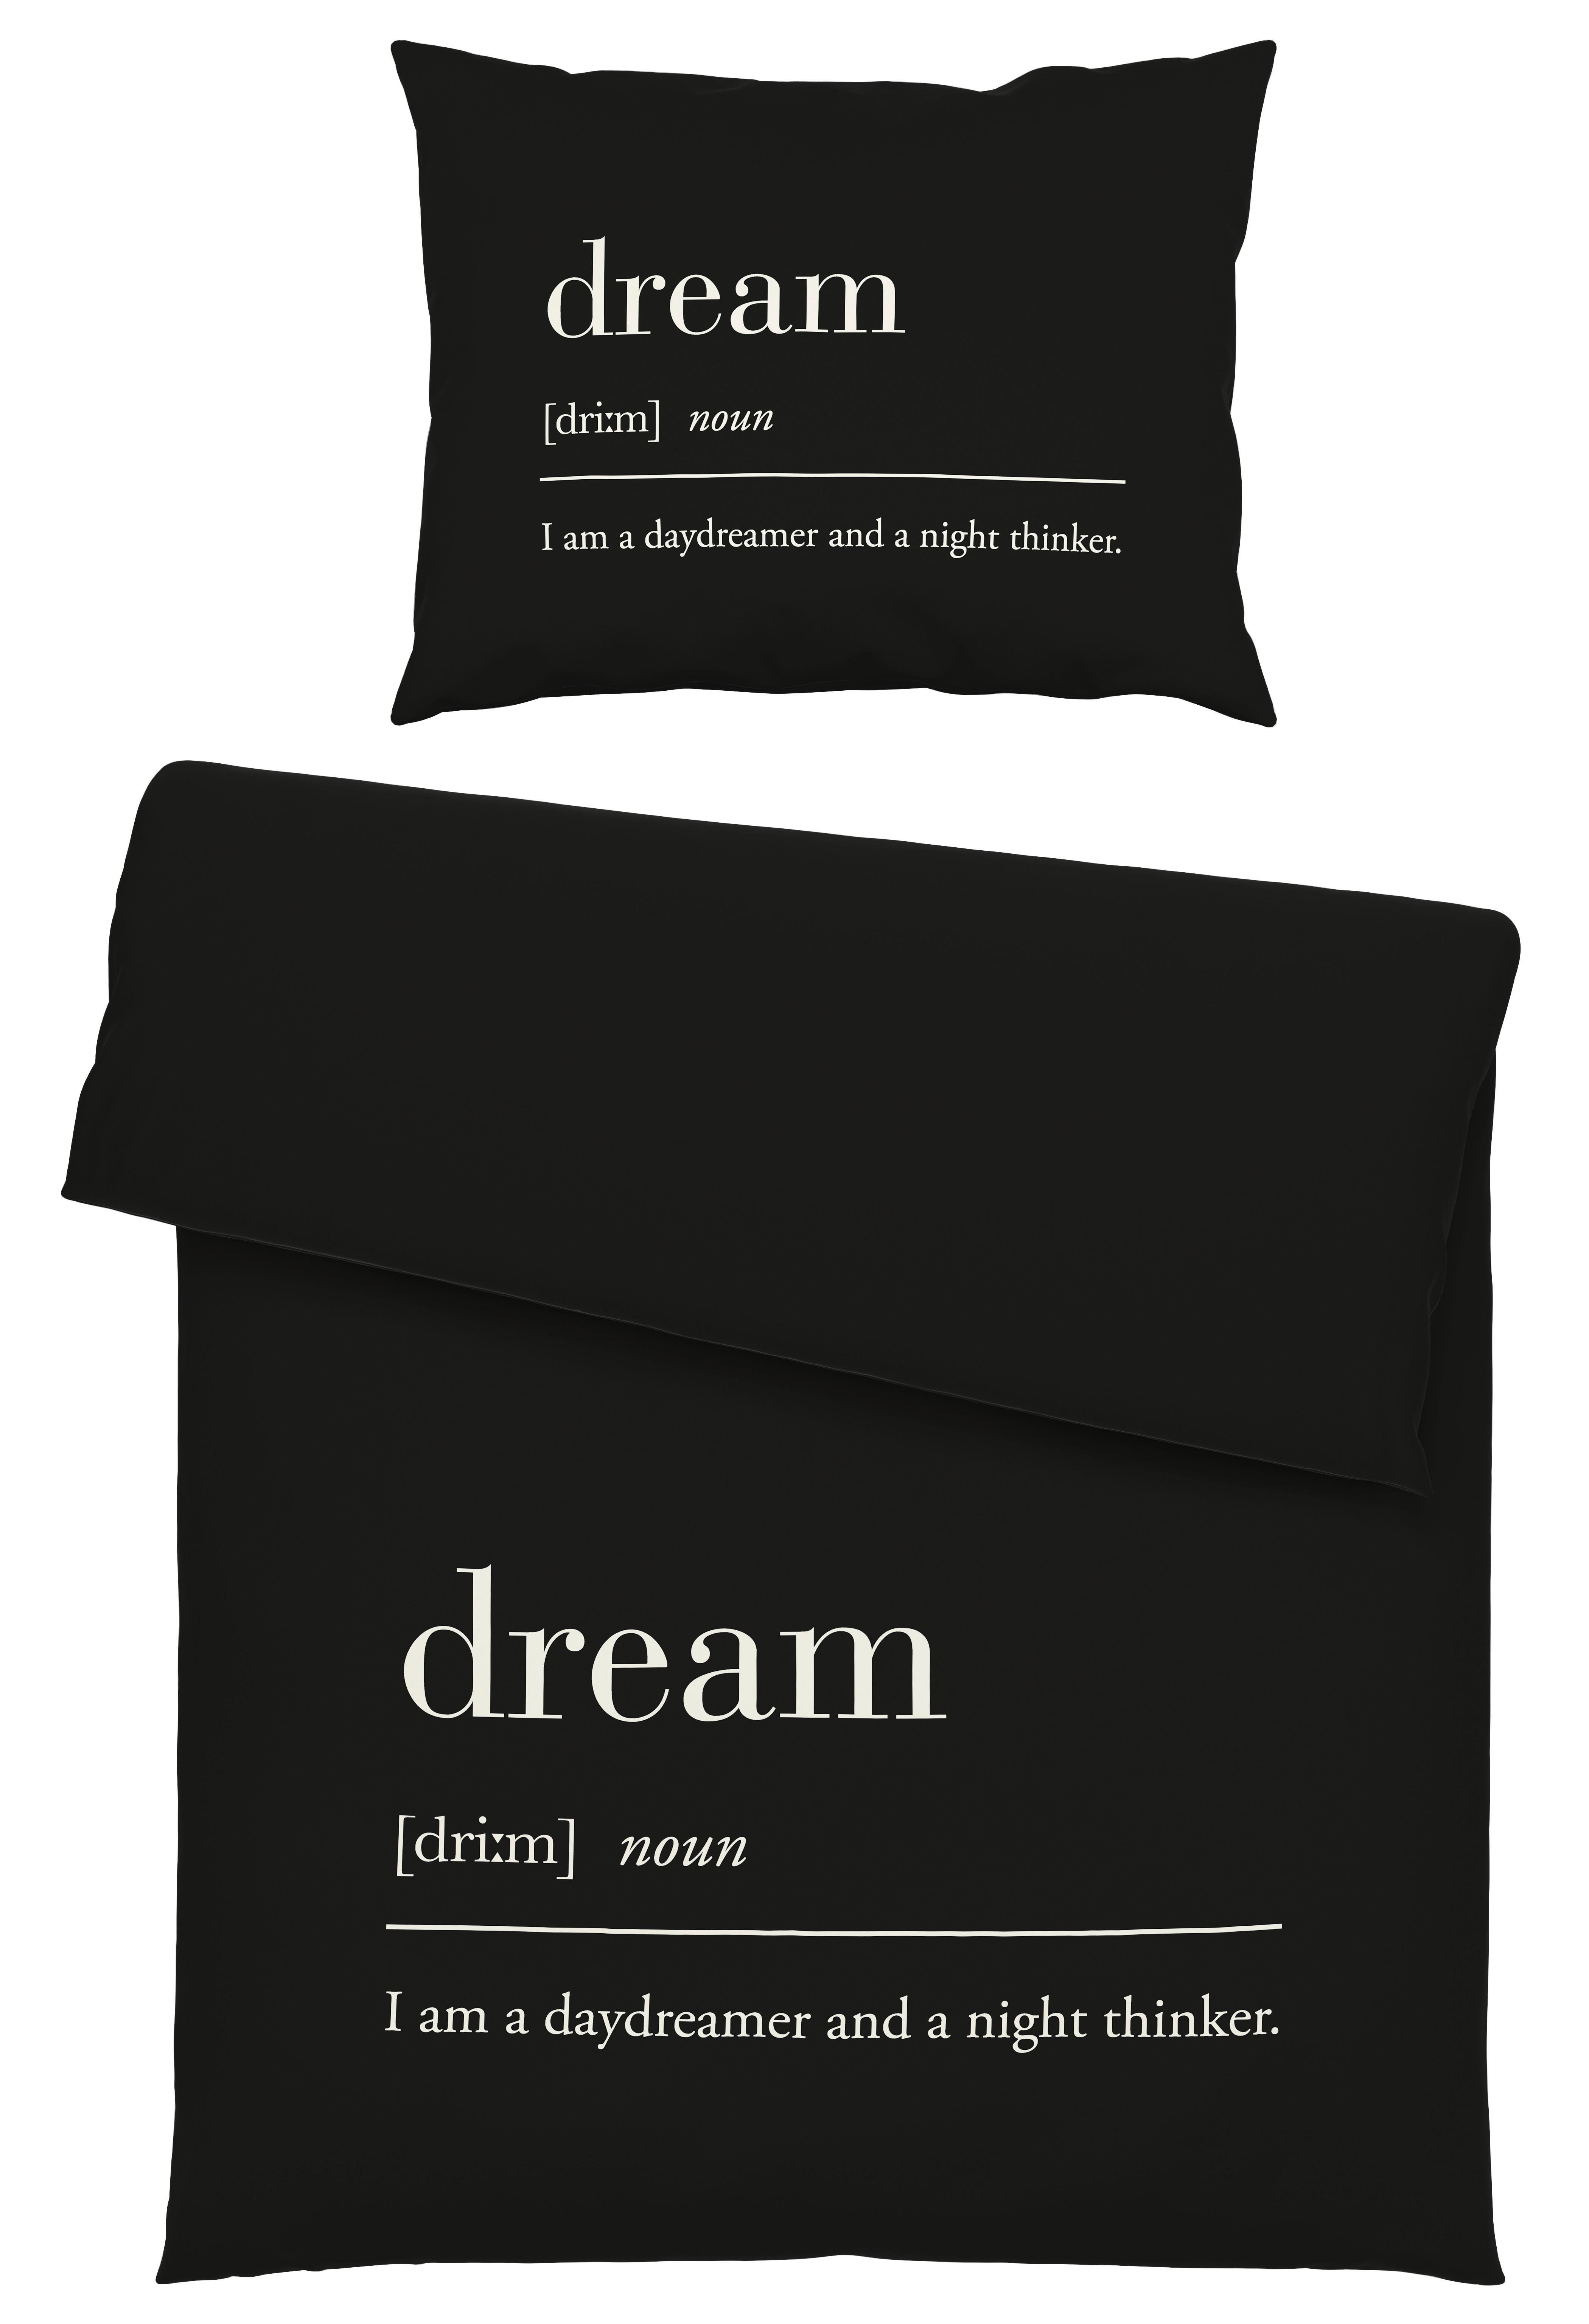 Povlečení Dream, 140/200cm, Černá - černá, Moderní, textil (140/200cm) - Modern Living